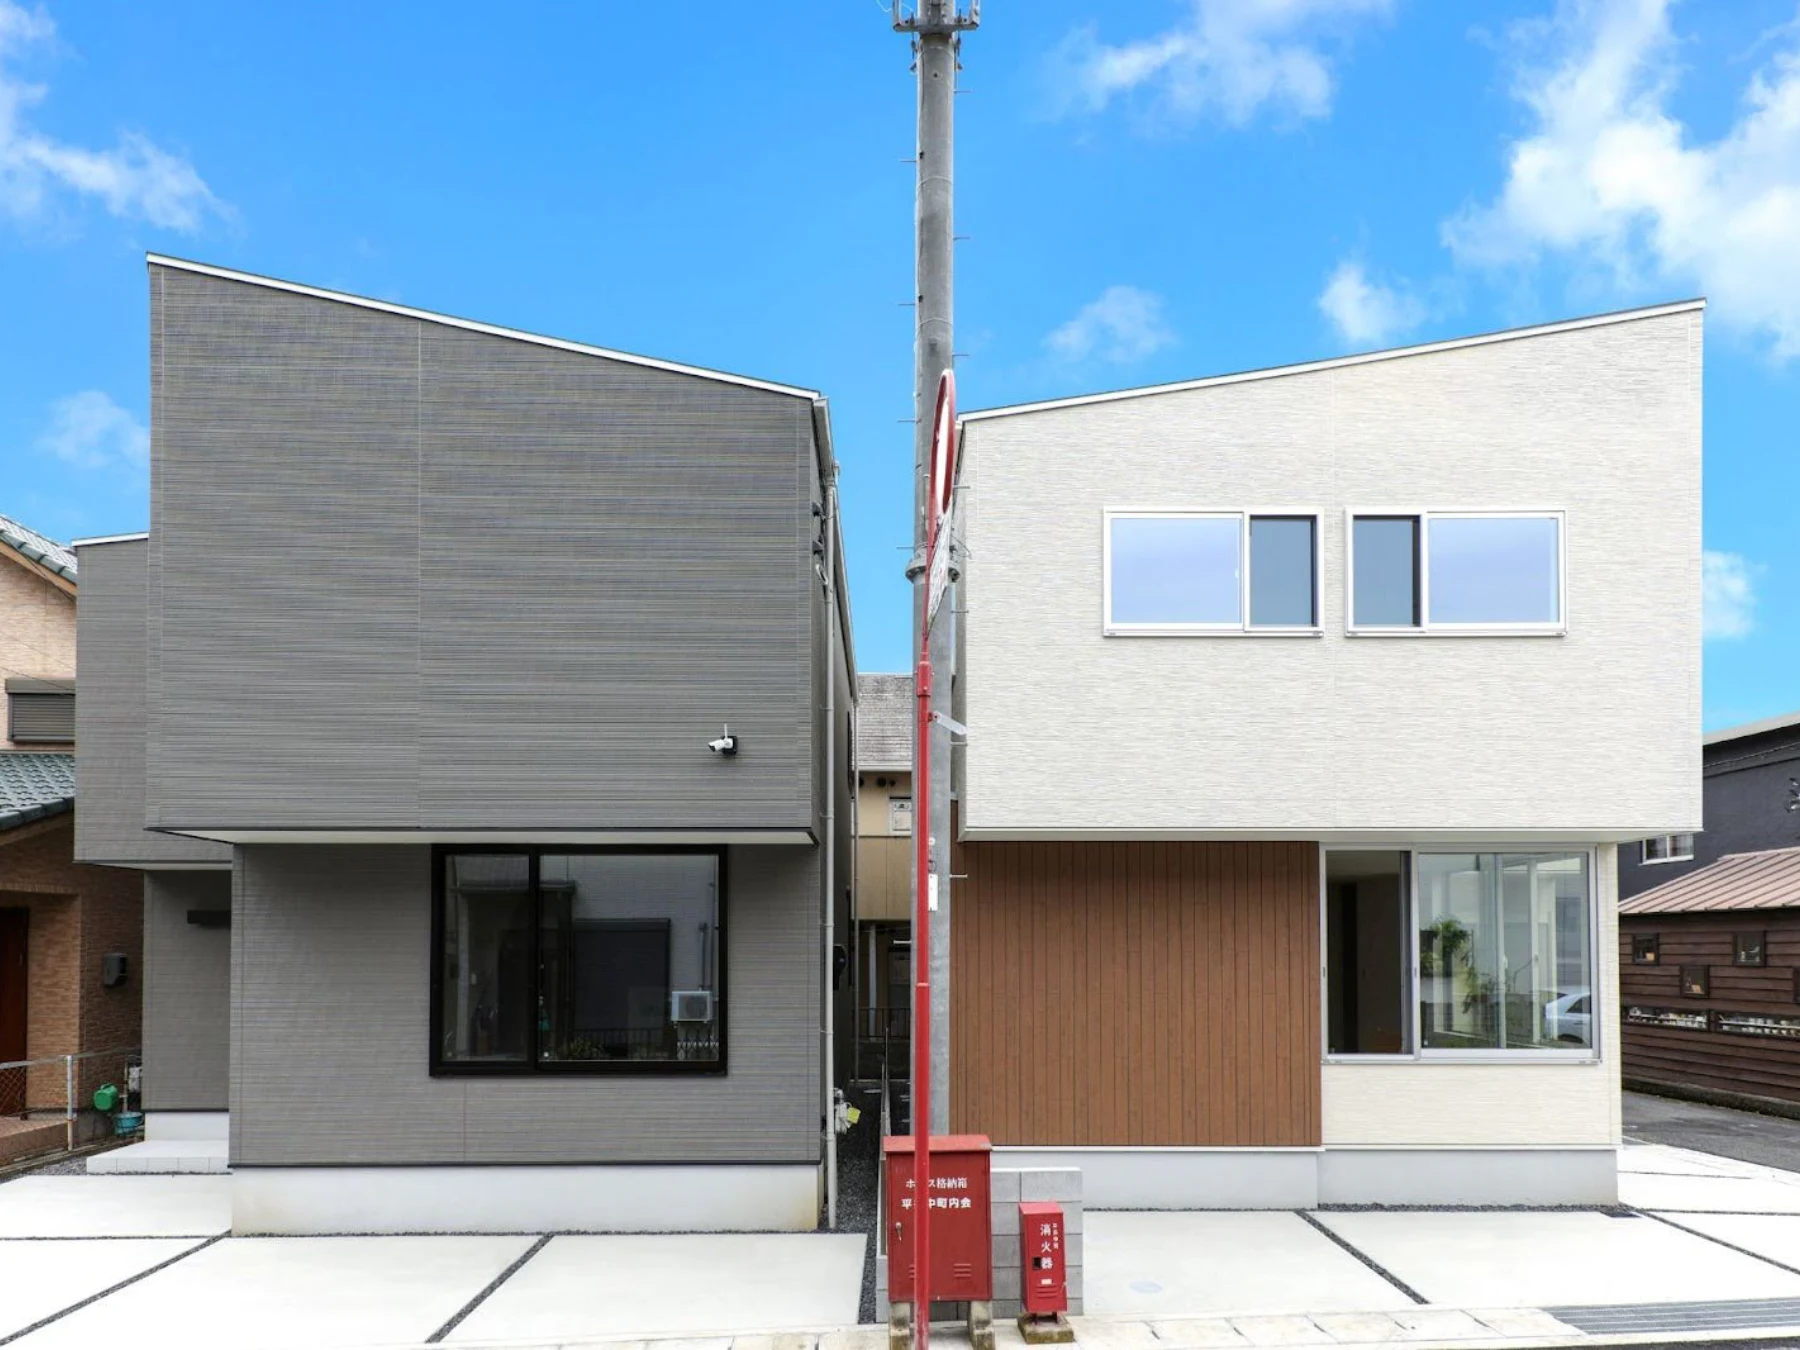 建売住宅の外観が類似する3つの理由